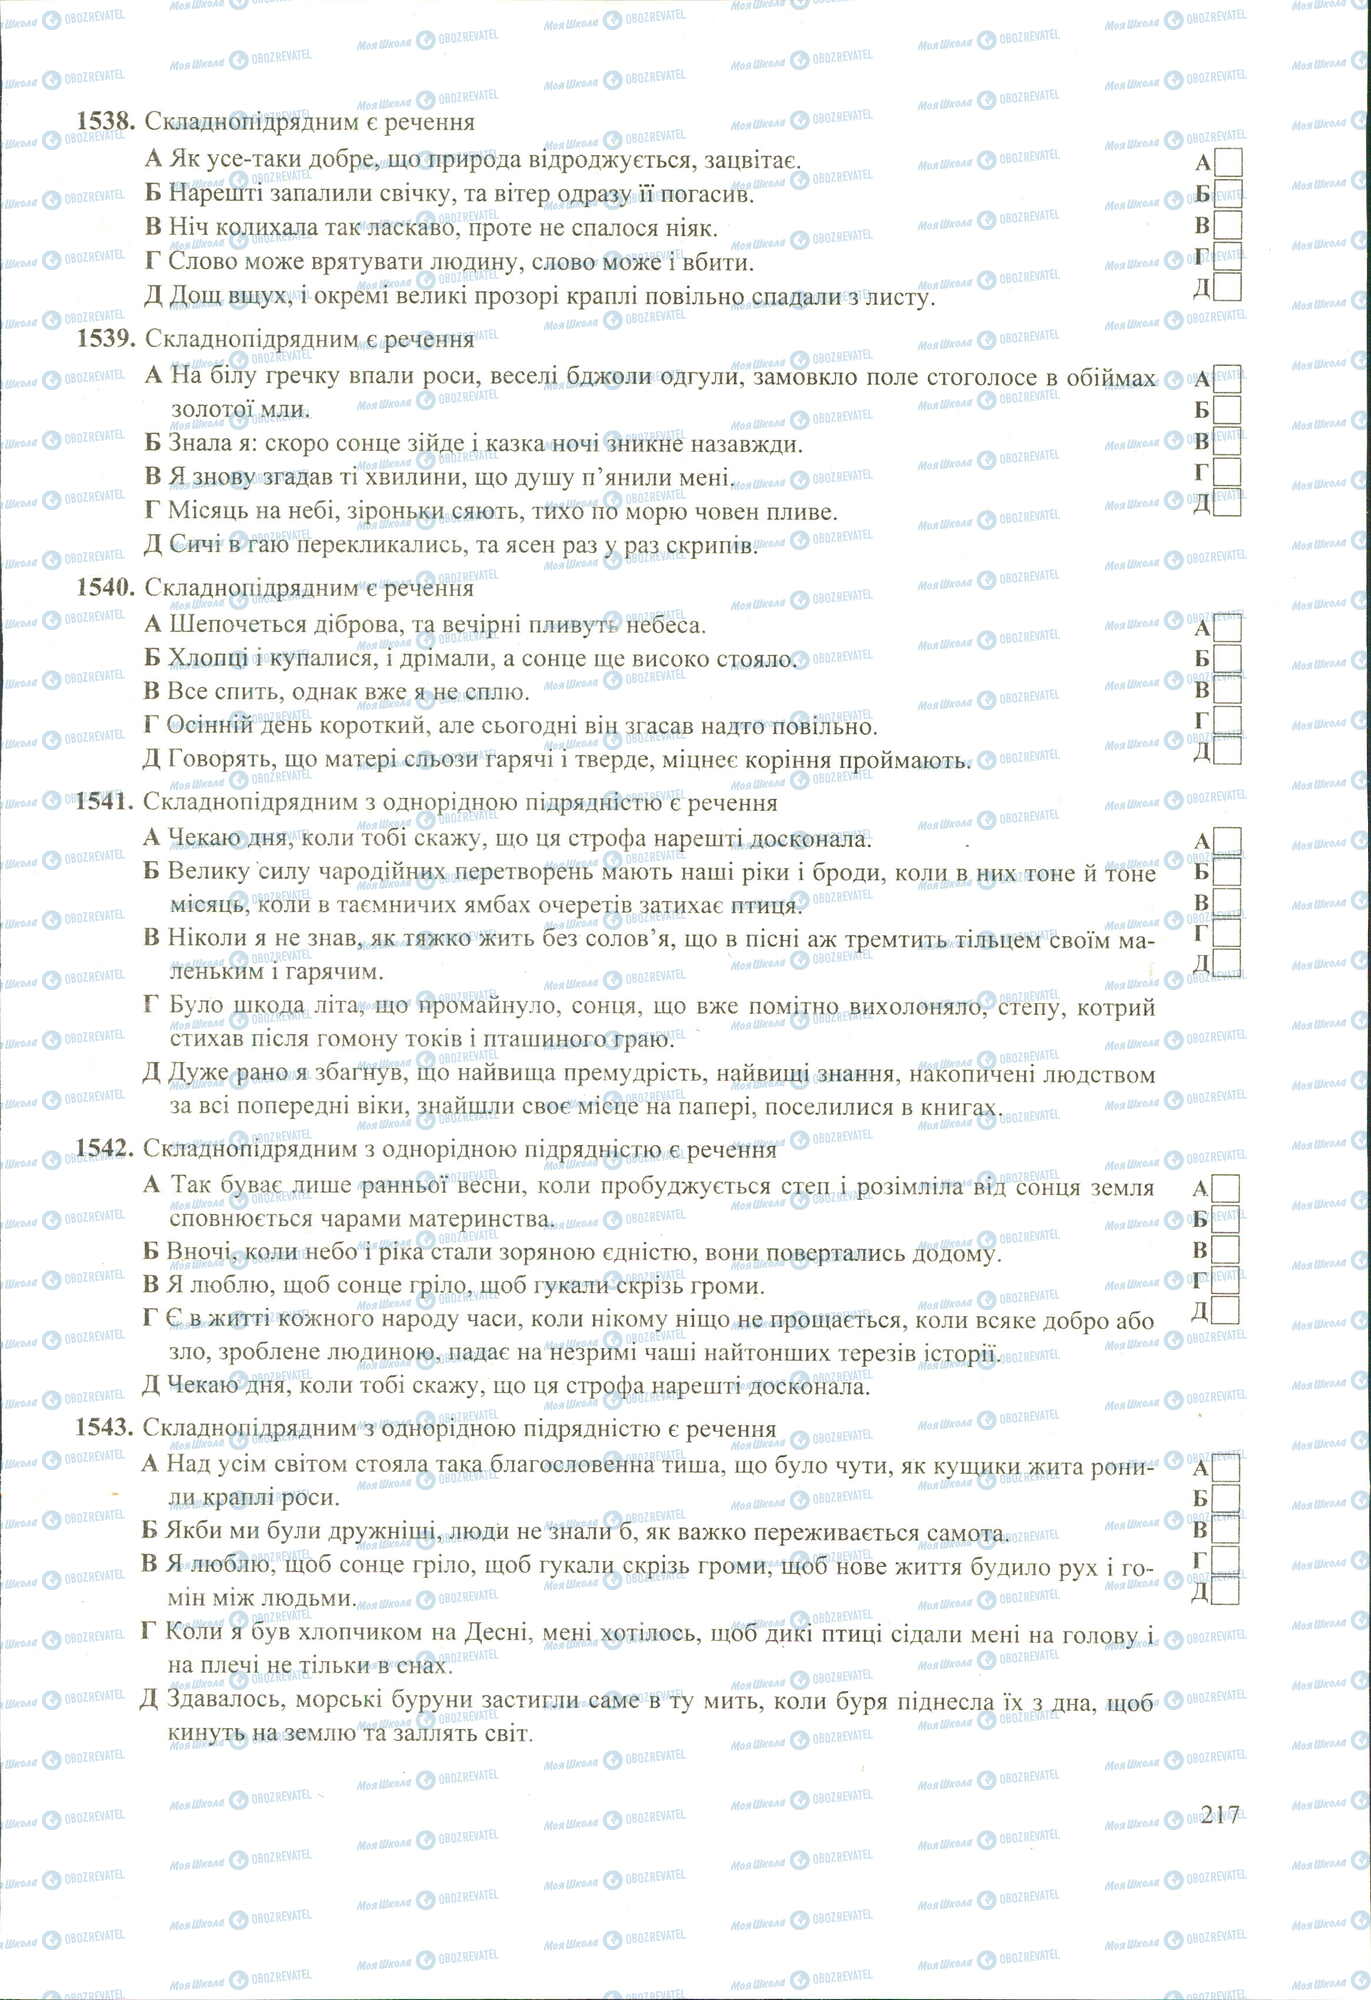 ЗНО Укр мова 11 класс страница 1538-1543